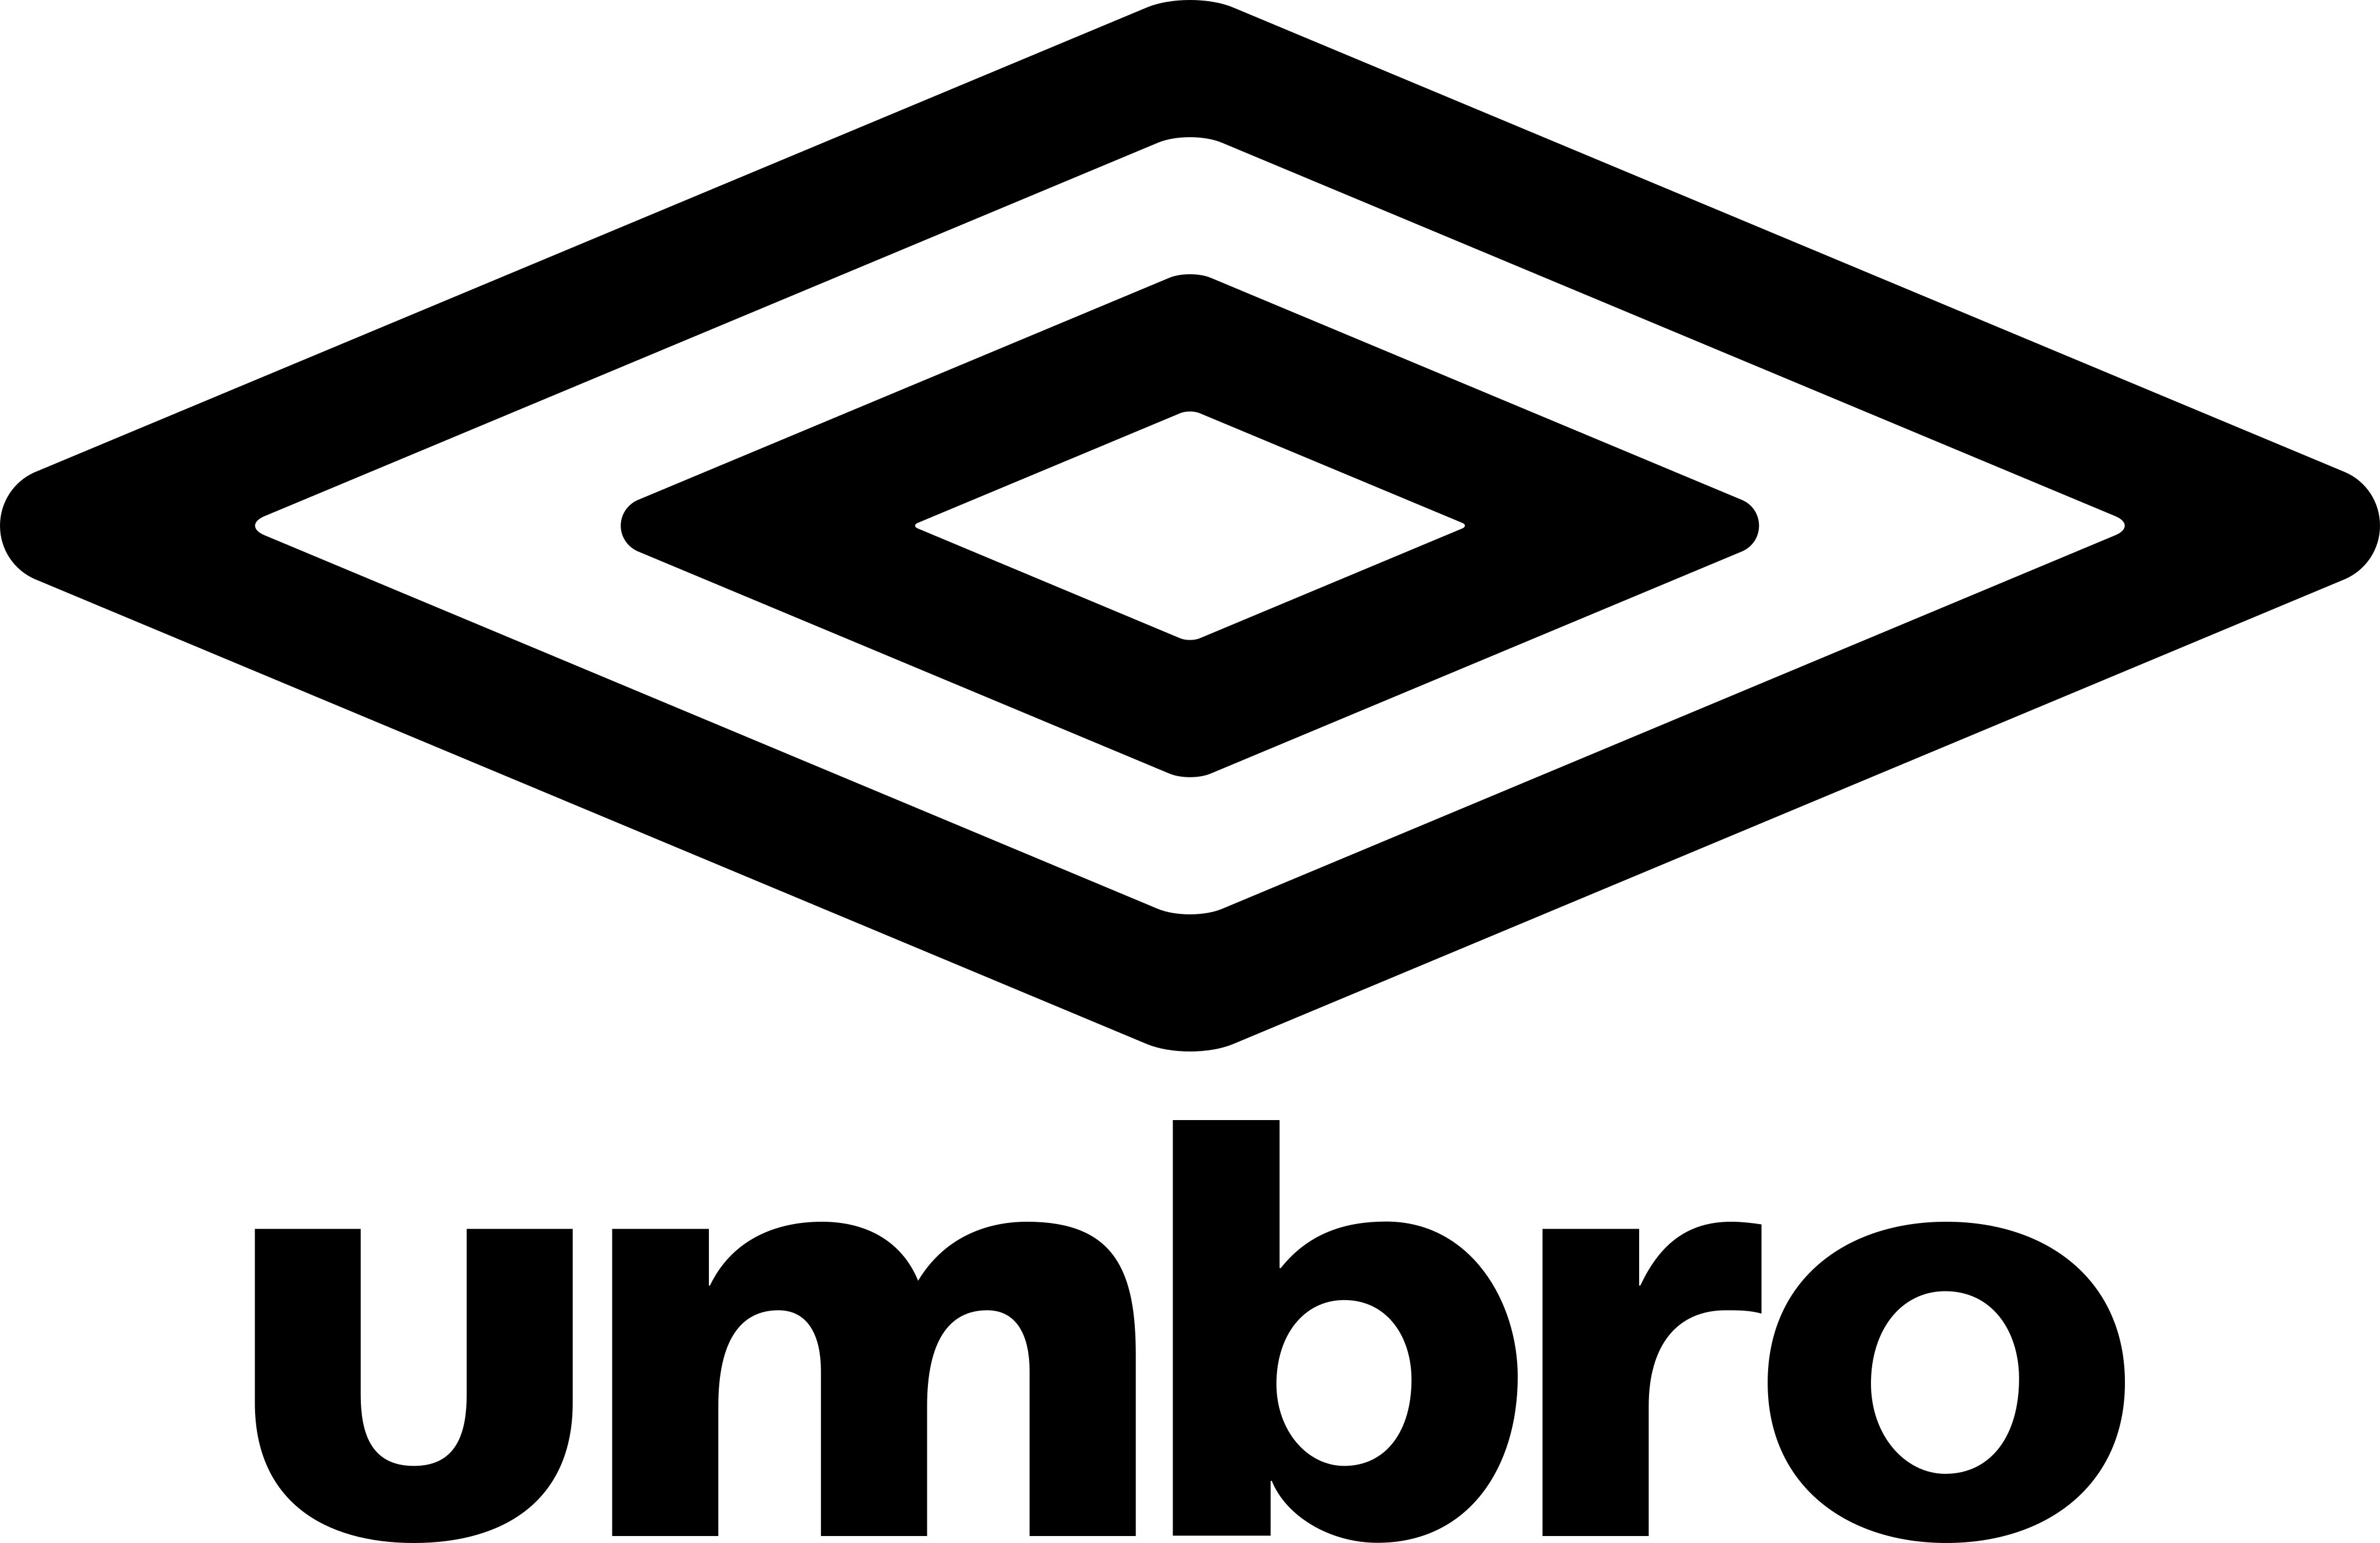 Logo Umbro Png - KibrisPDR